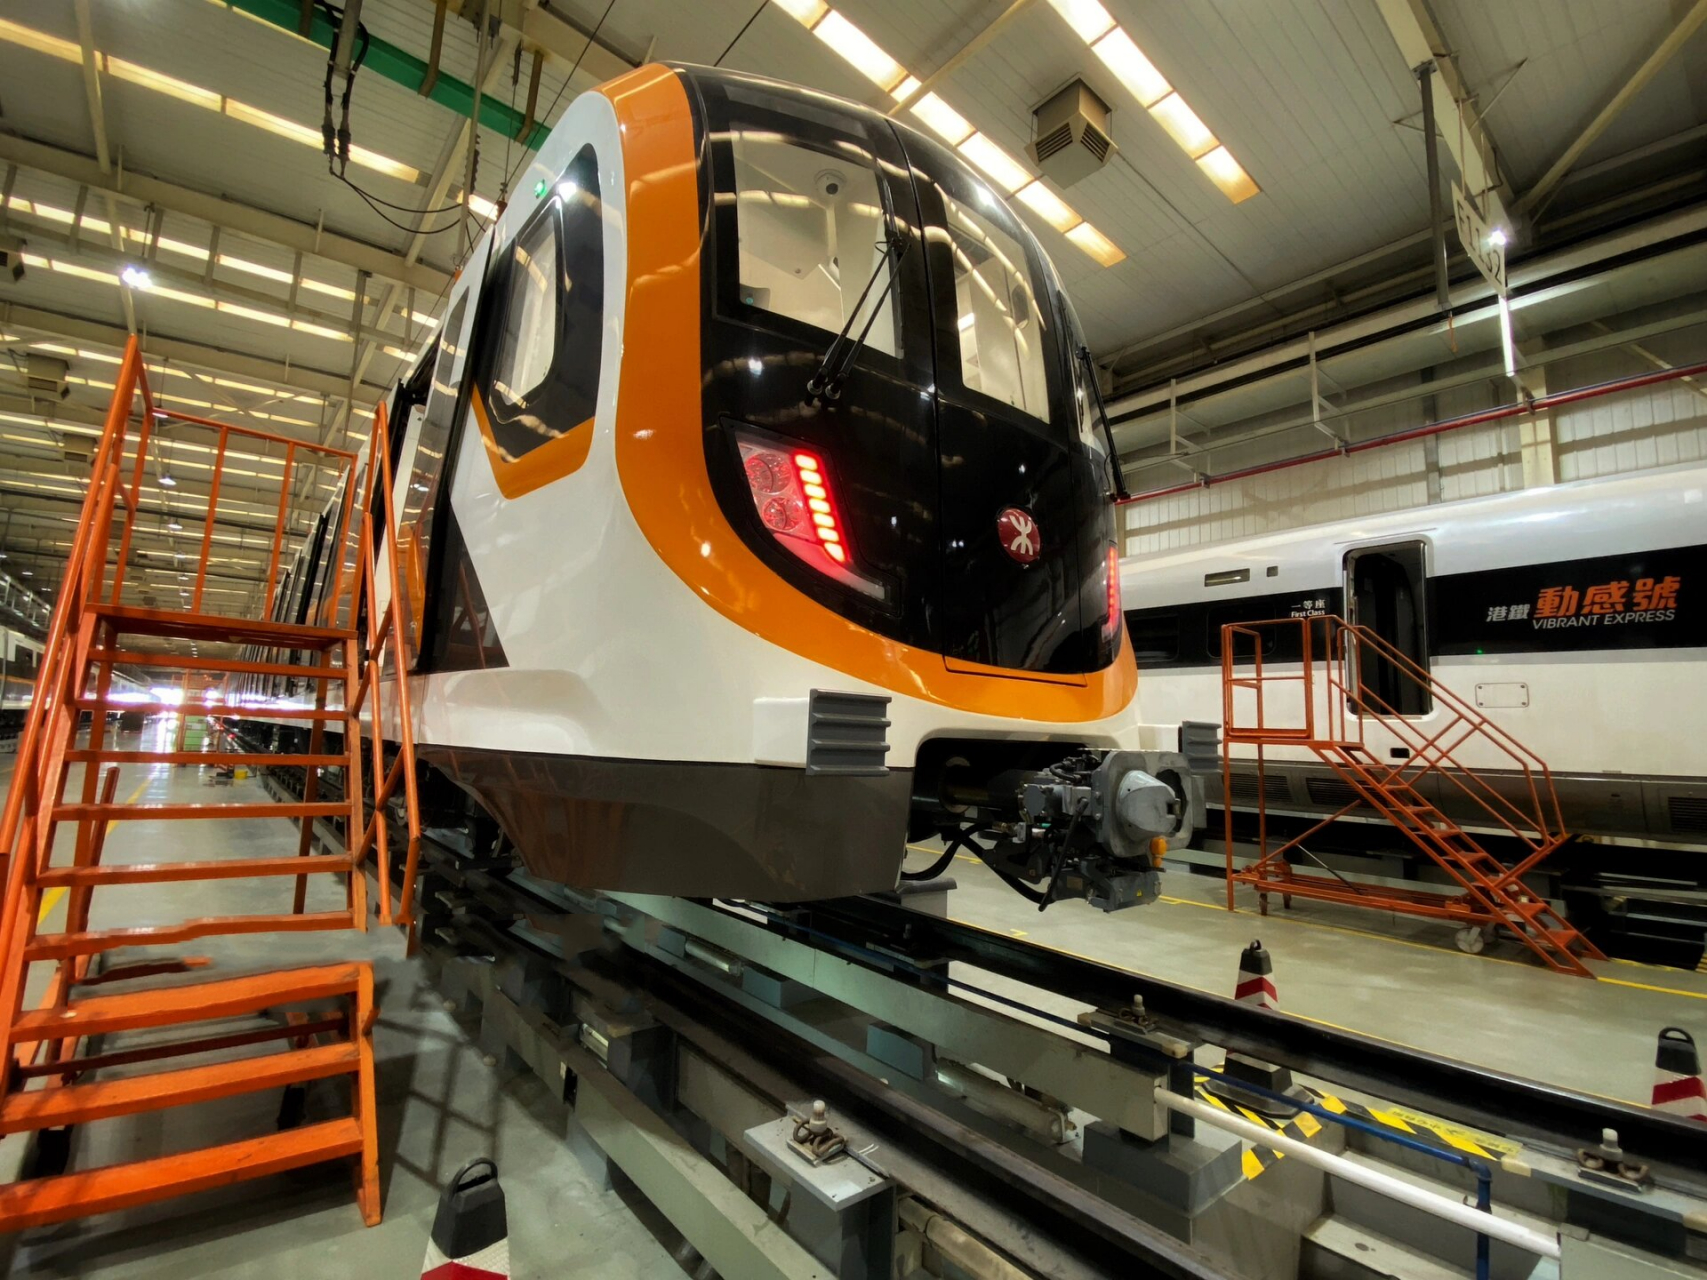 深圳地铁13号线列车 来自甲方的审美,港铁运营的13号线列车配色是橙色